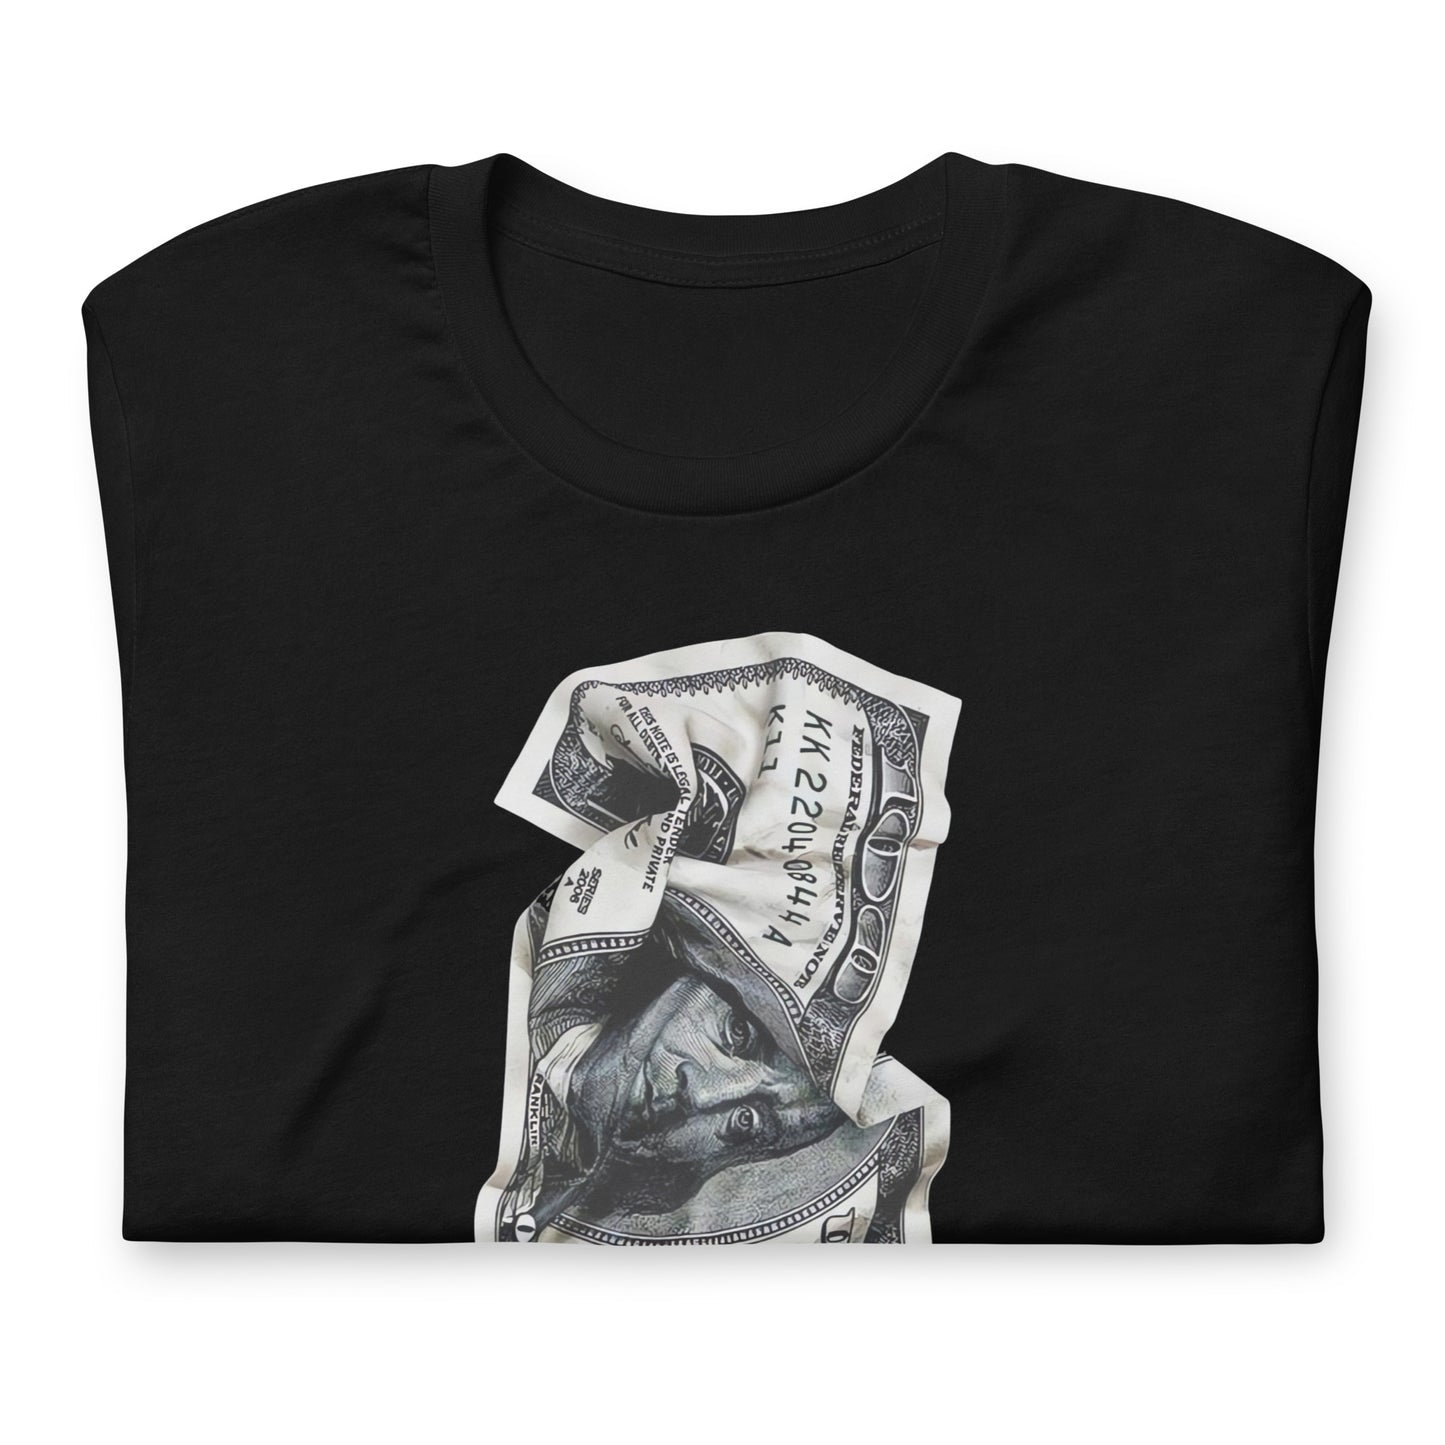 Camiseta de Money Paper , Descubre calidad excepcional y estampados duraderos. Encuentra estilo y orgullo en cada prenda.